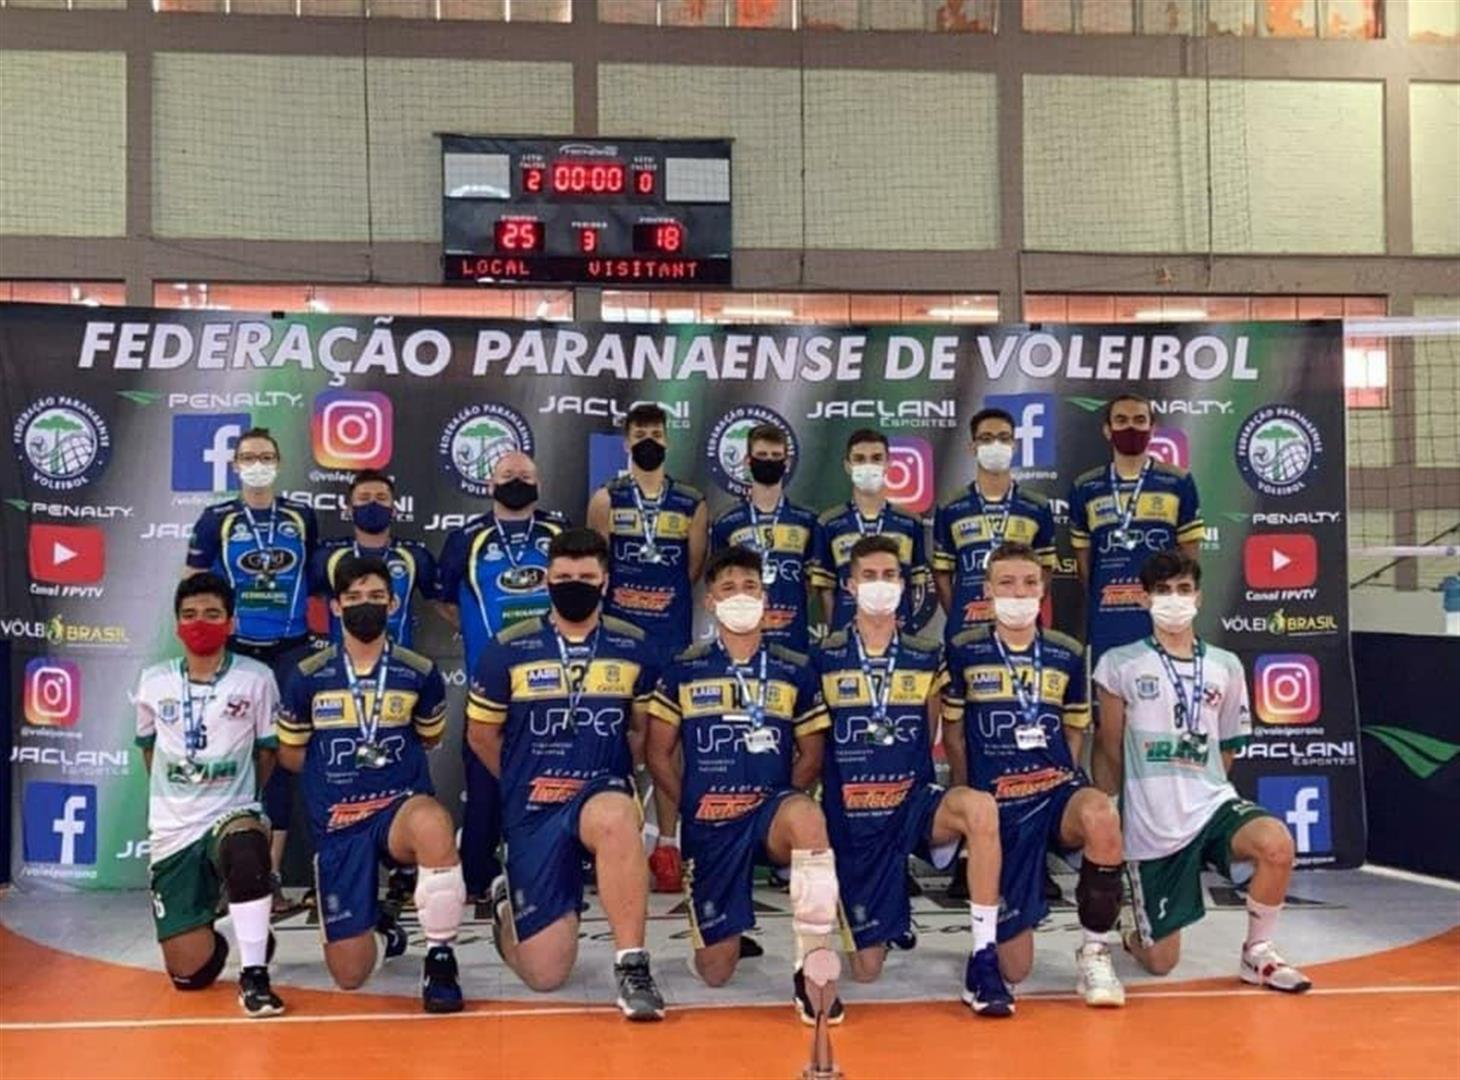 Seleção de Voleibol do Município de Cascavel conquista o vice-campeonato Paranaense sub-17